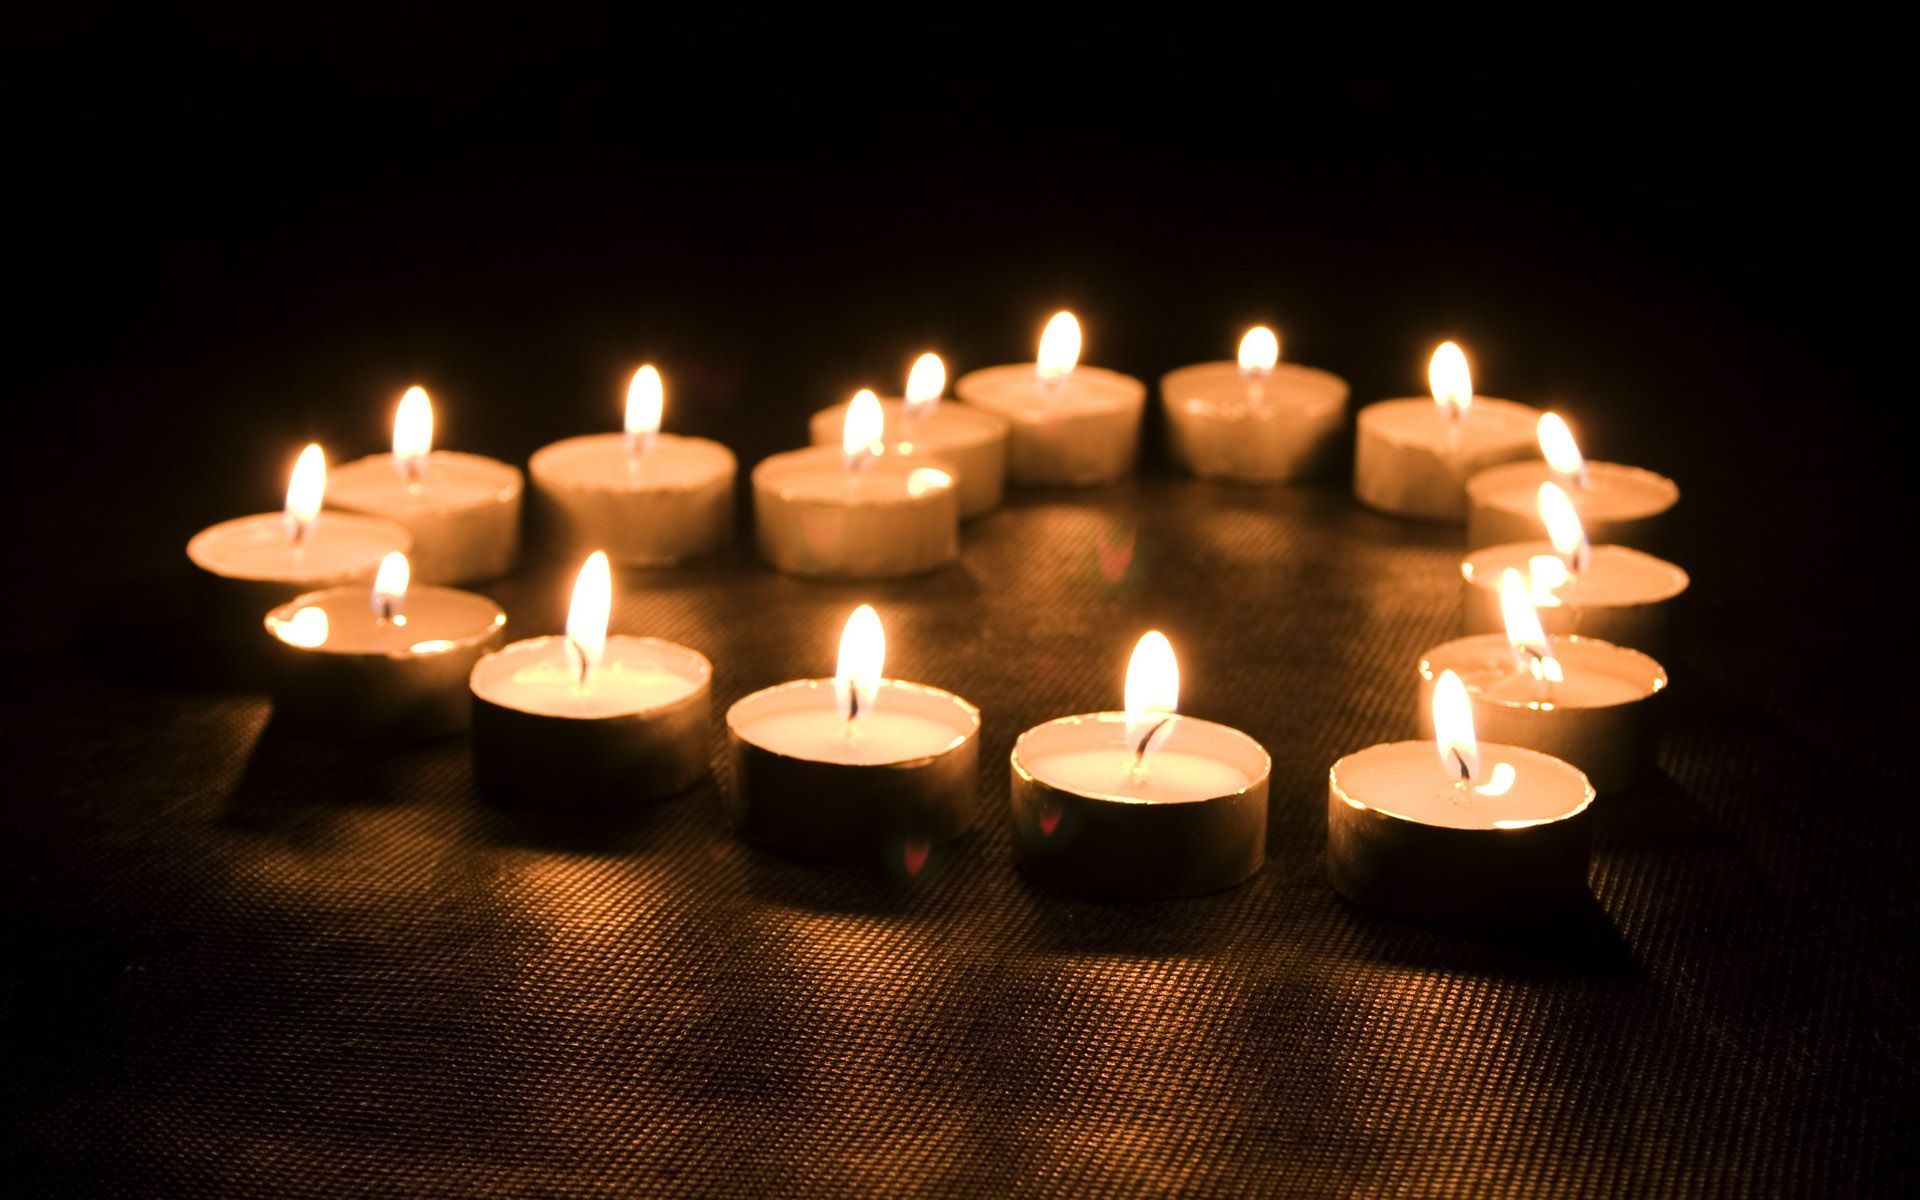 تصویر شمع چیده شده به شکل قلب روشن برای تسلیت بدون متن 